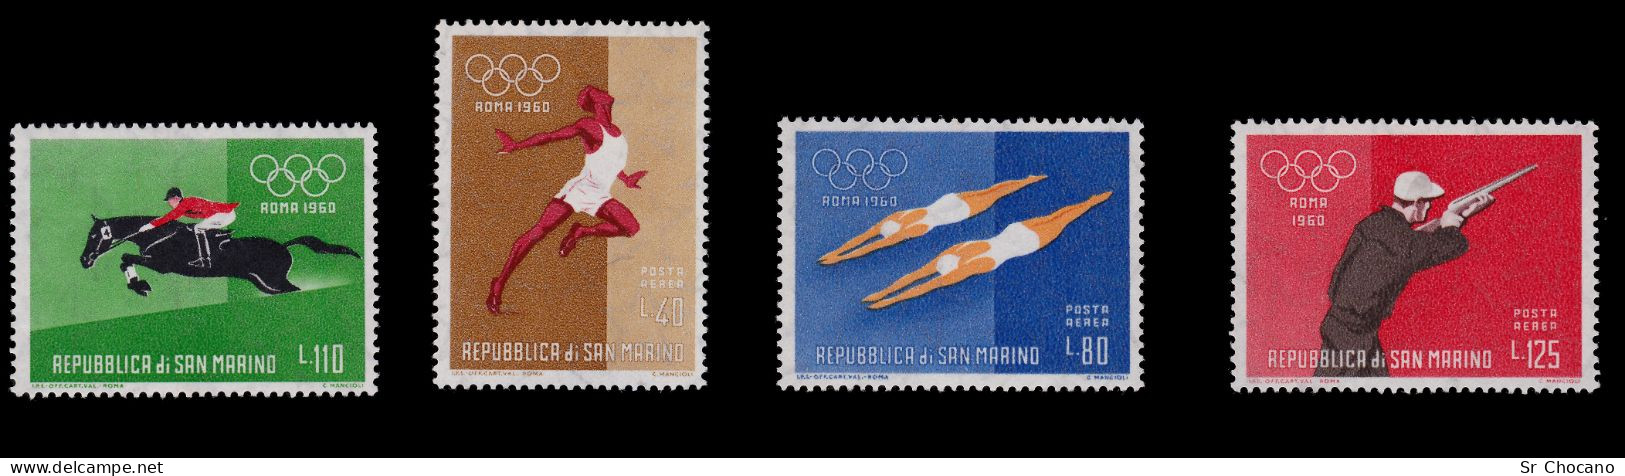 SAN MARINO STAMPS.1960.17th Olympic Games Rome.SCOTT 456-465,C111-C114.MNH. - Ongebruikt